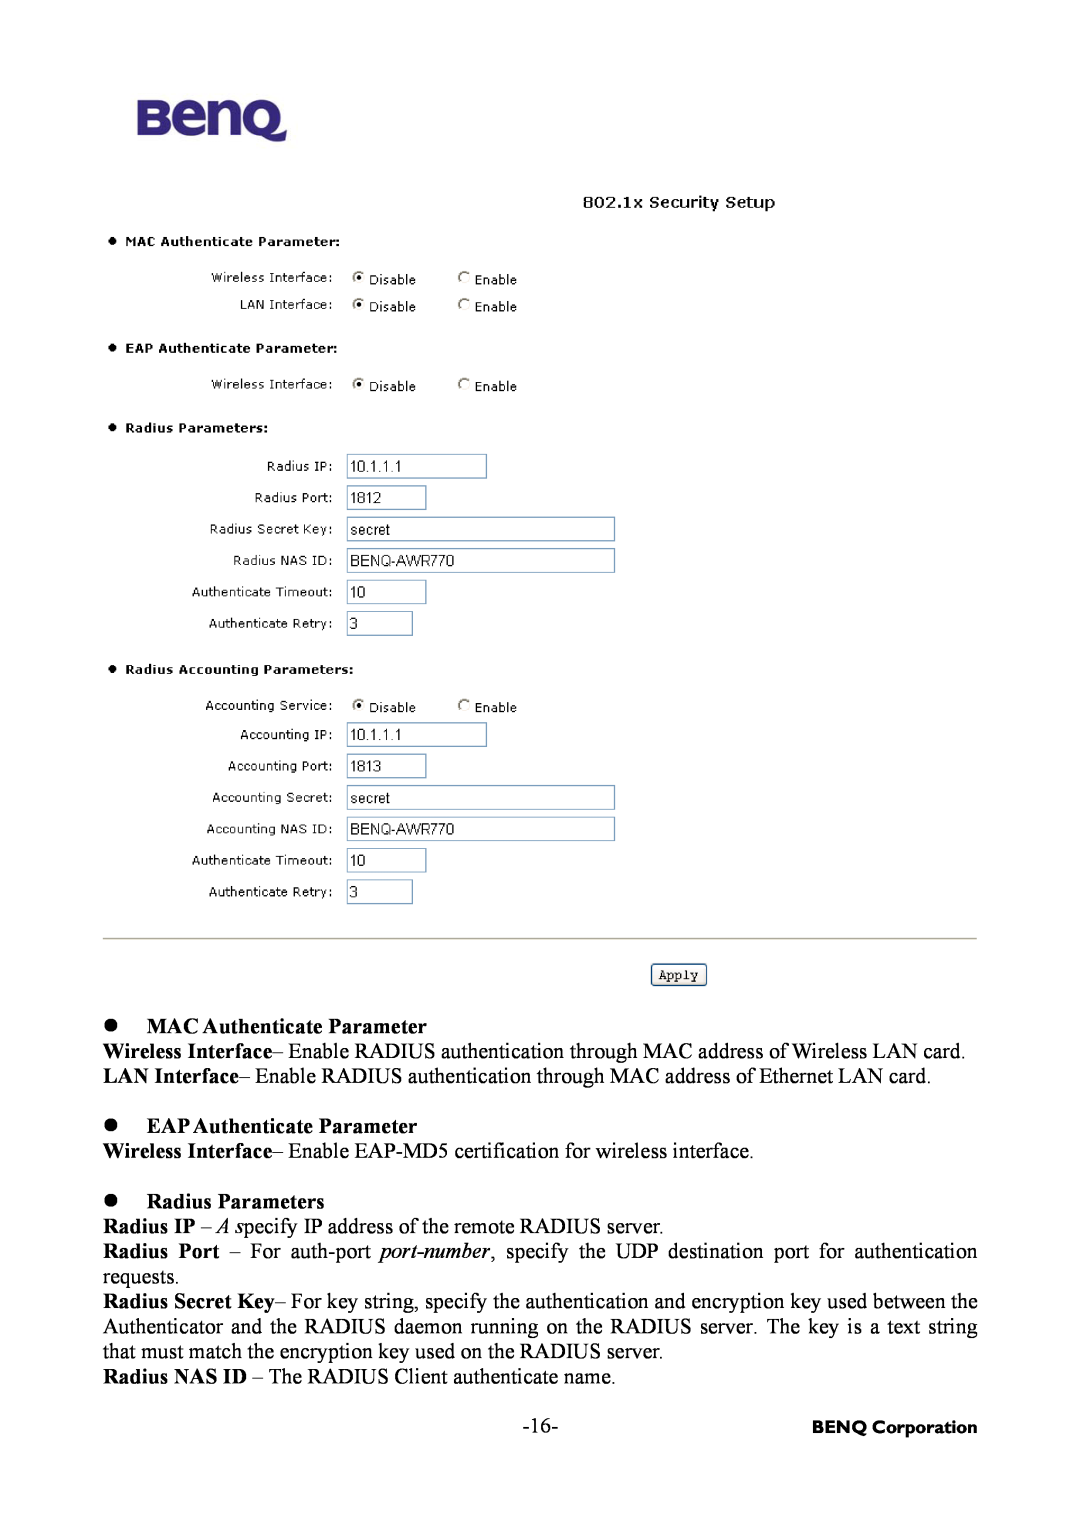 BenQ AWL-500 user manual MAC Authenticate Parameter, EAP Authenticate Parameter, Radius Parameters 